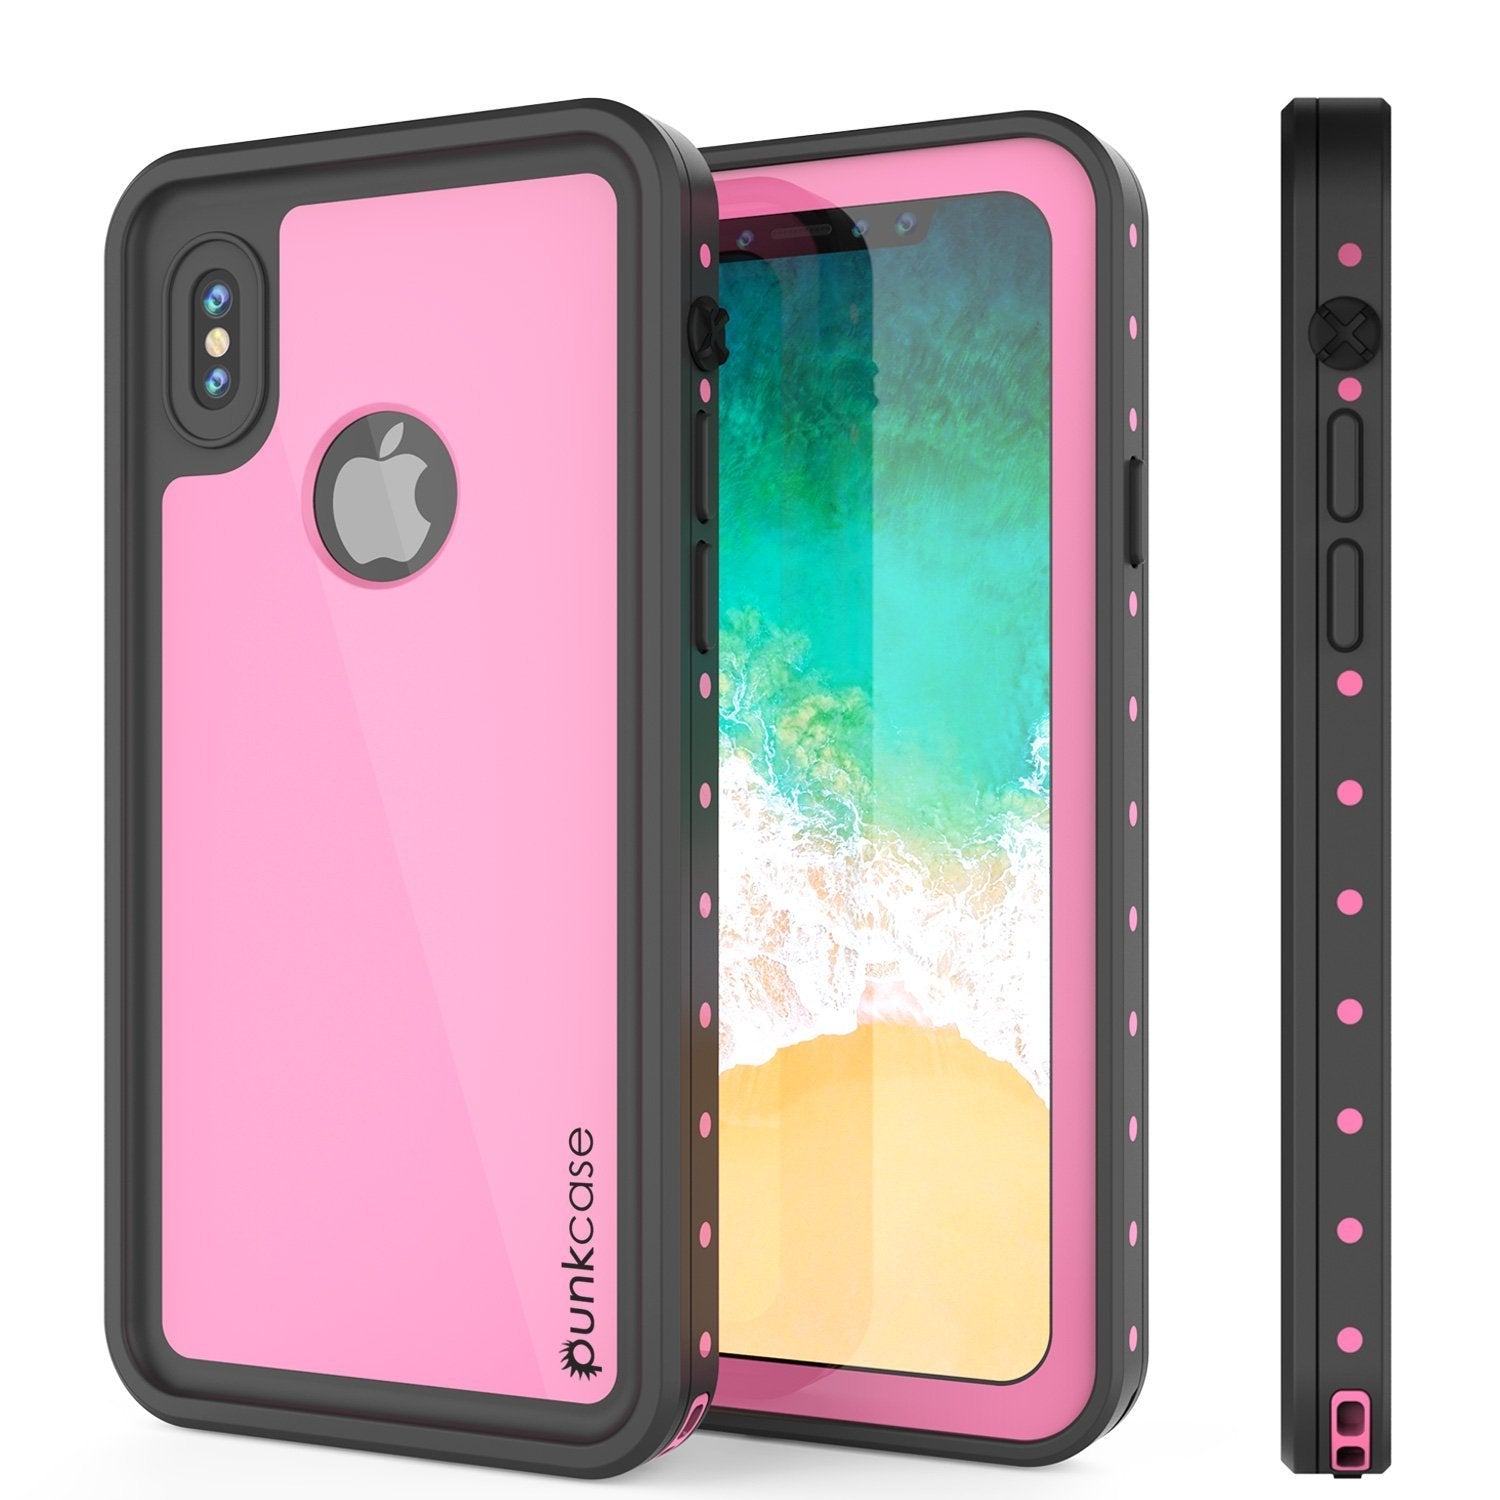 iPhone XR Waterproof IP68 Case, Punkcase [Pink] [StudStar Series] [Slim Fit] [Dirtproof]